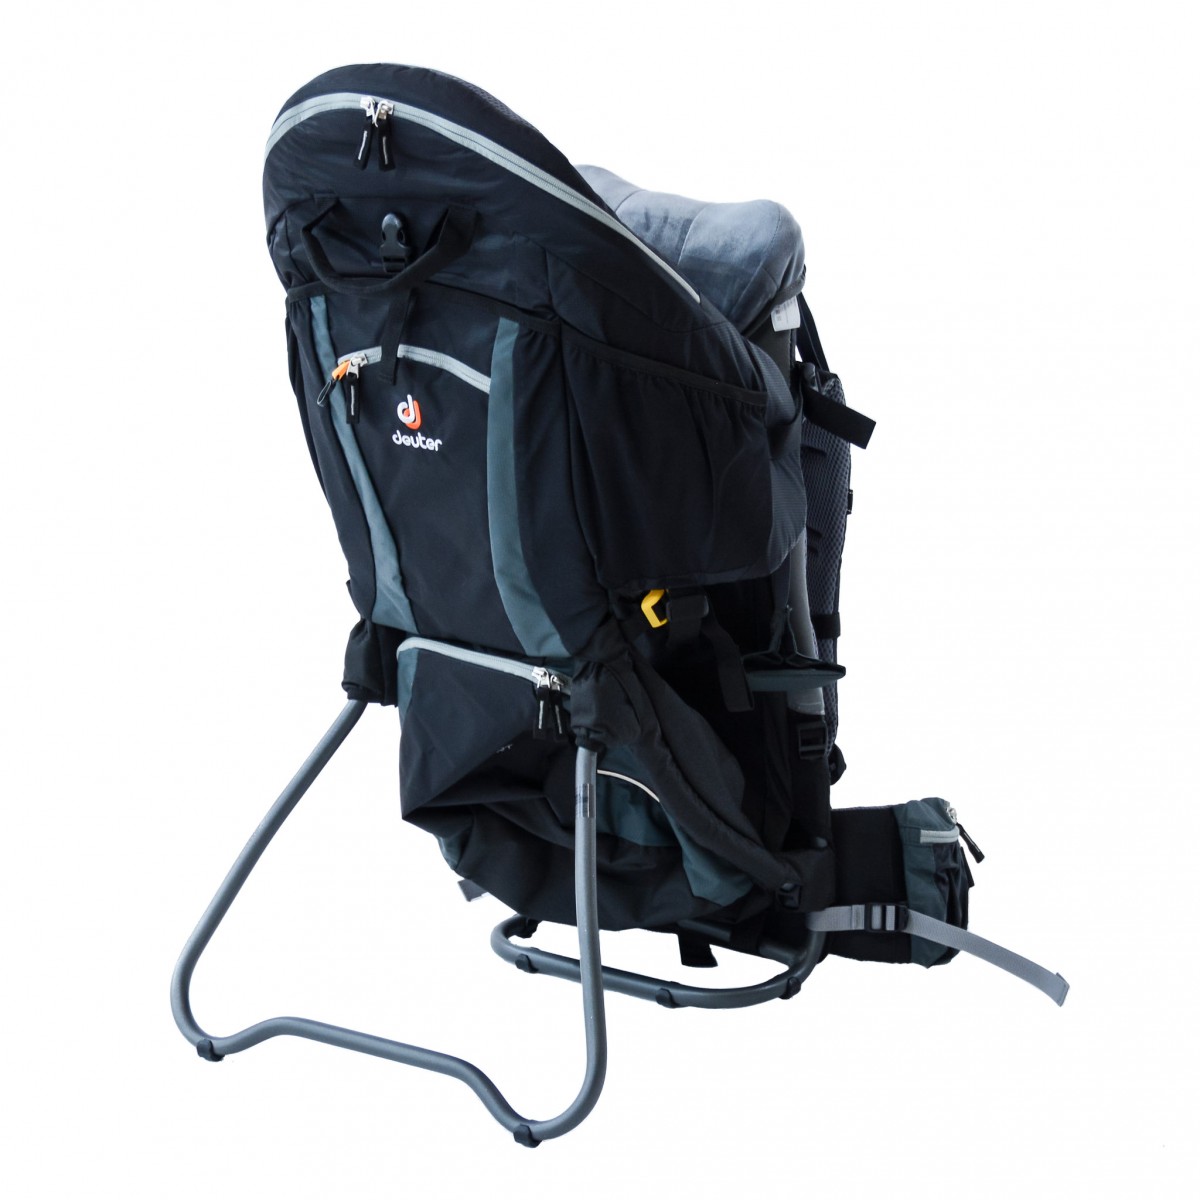 deuter kid comfort 3 baby backpack review